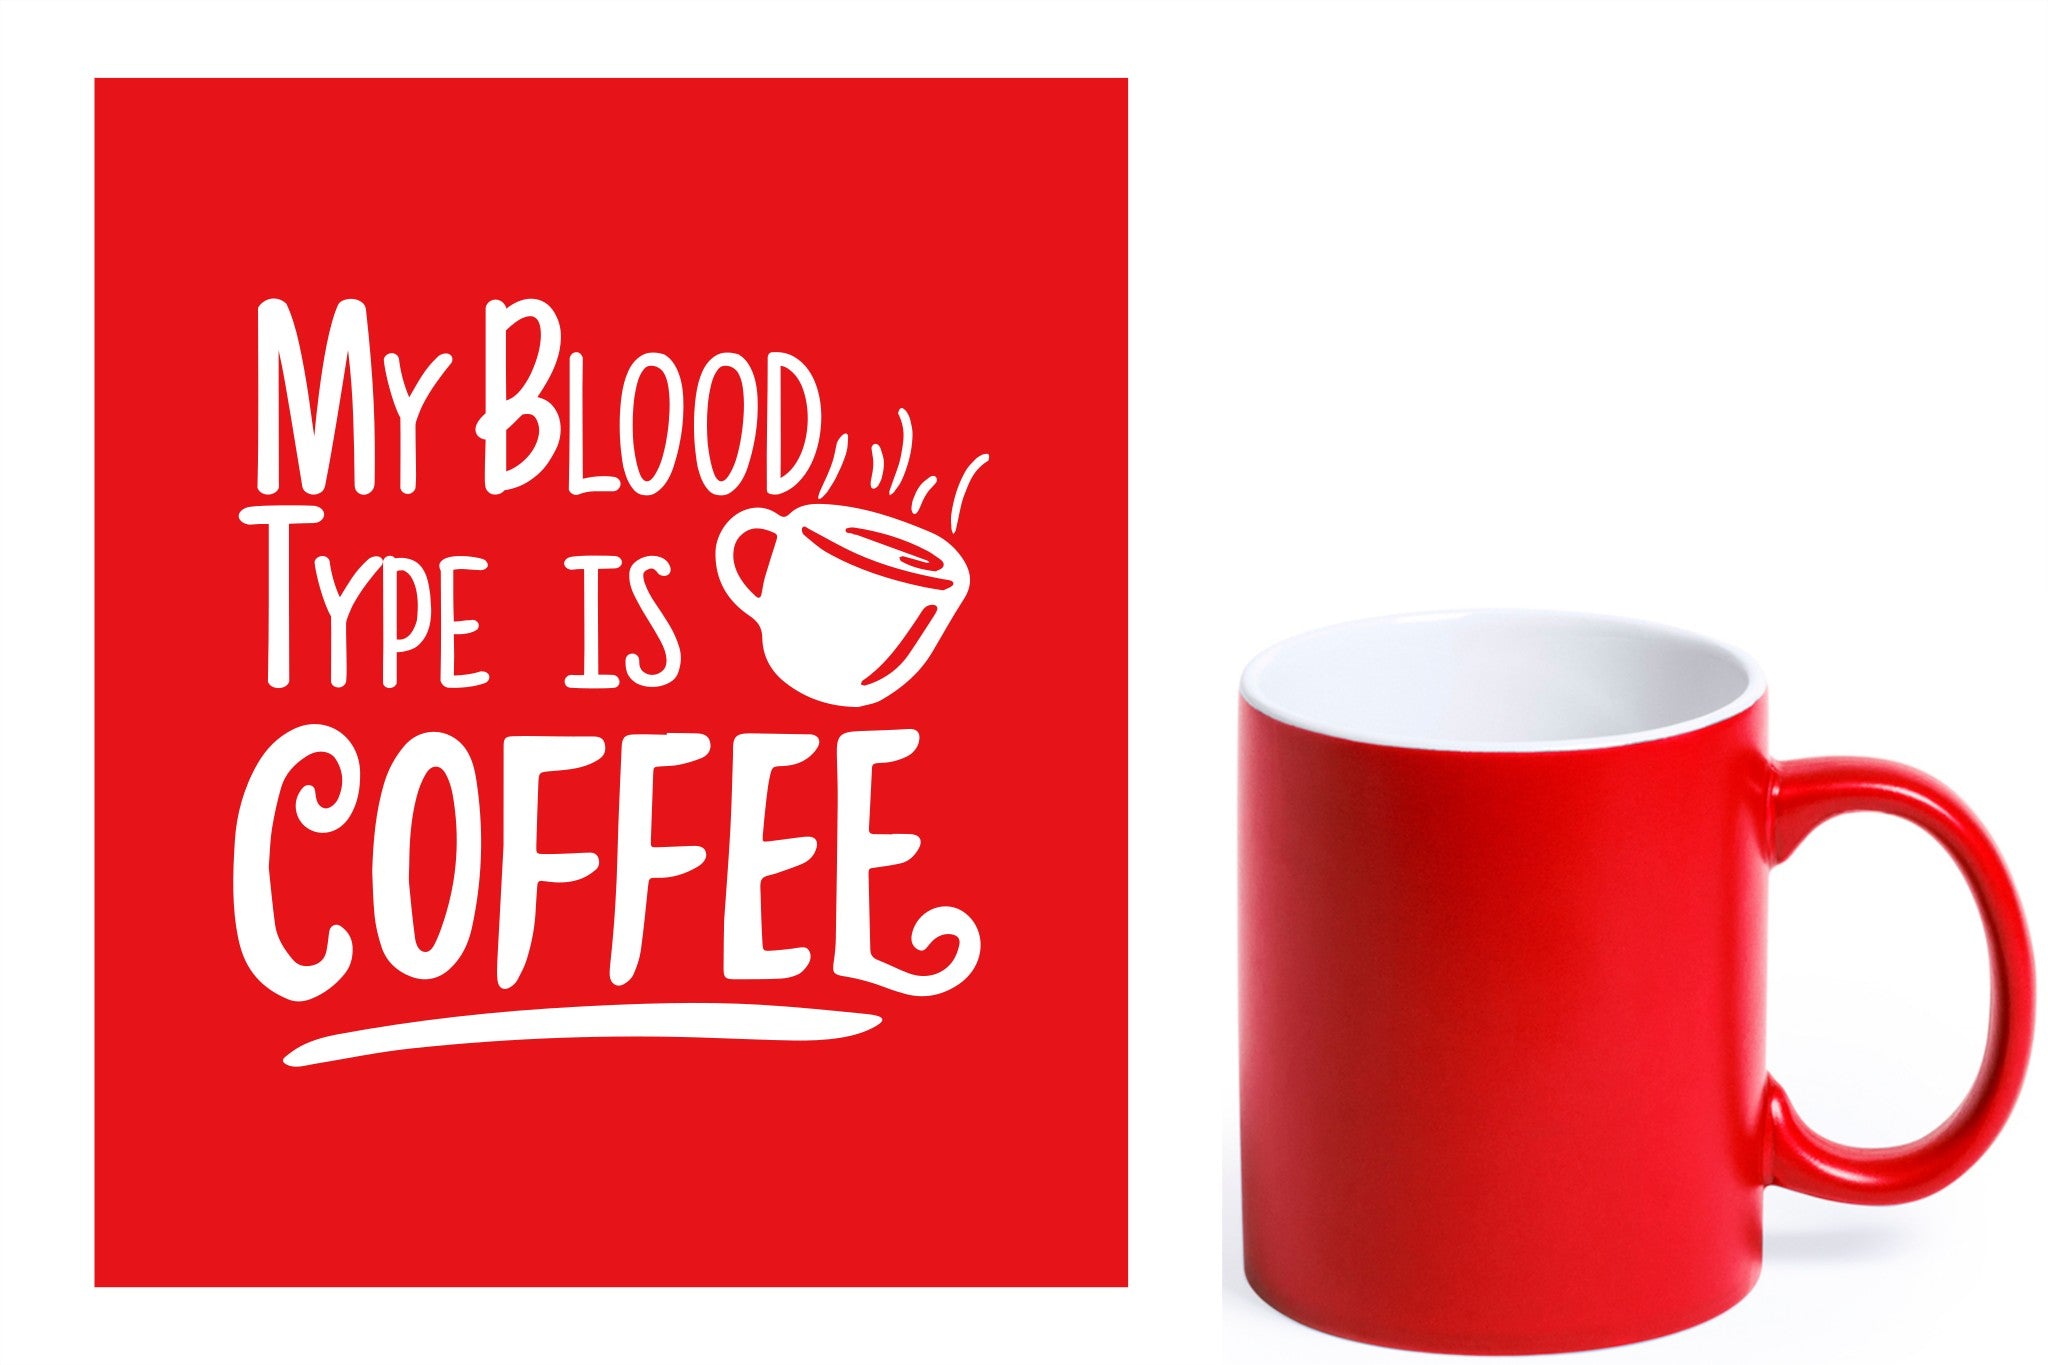 rode keramische mok met witte gravure  'My blood type is coffee'.